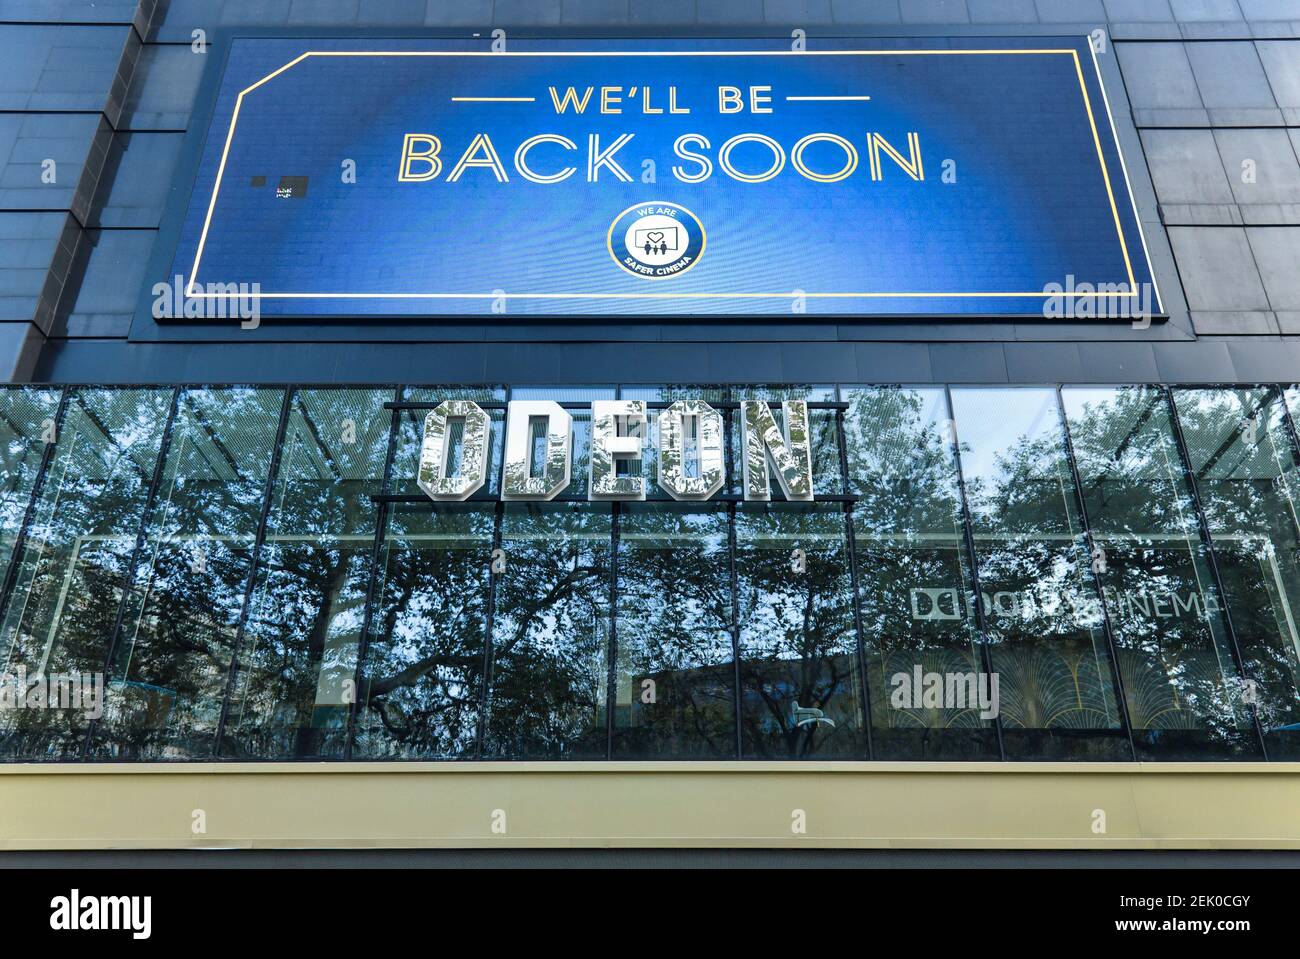 Auf dem Odeon-Kino ist ein Schild mit der Aufschrift "We'll be back soon" auf dem Leicester Square zu sehen.Kinos werden voraussichtlich ab dem 17th. Mai wiedereröffnet, da der britische Premierminister Boris Johnson seinen Fahrplan aus der Lockdown-Liste für England ankündigt. Stockfoto